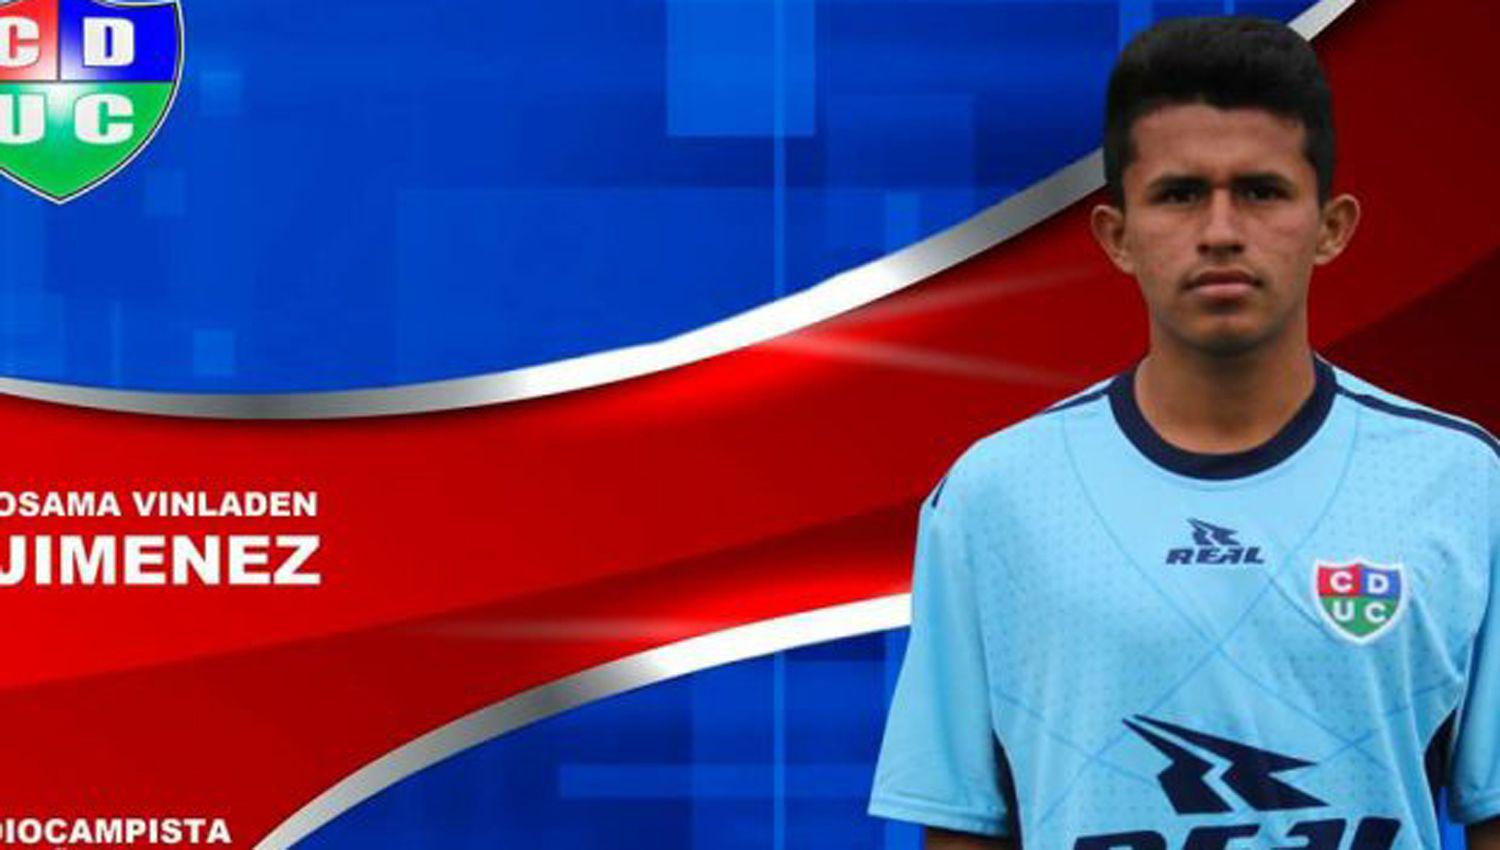 Osama Vinladen Jimeacutenez el particular nombre de un futbolista de la segunda divisioacuten de Peruacute